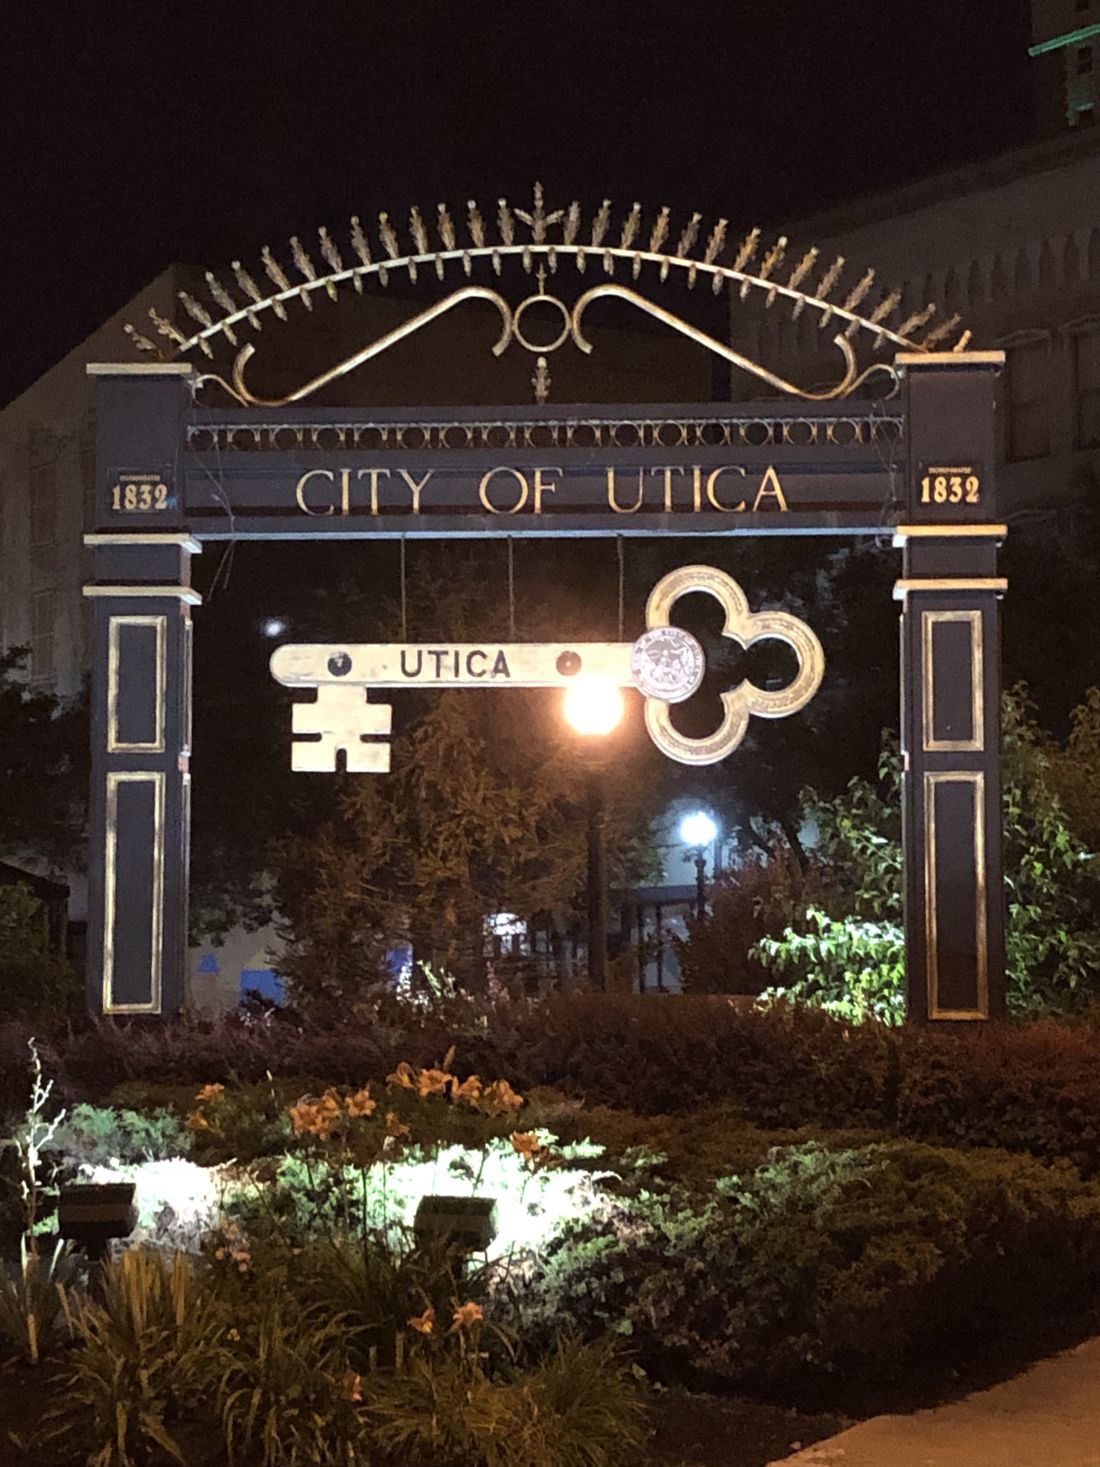 City of Utica Signage